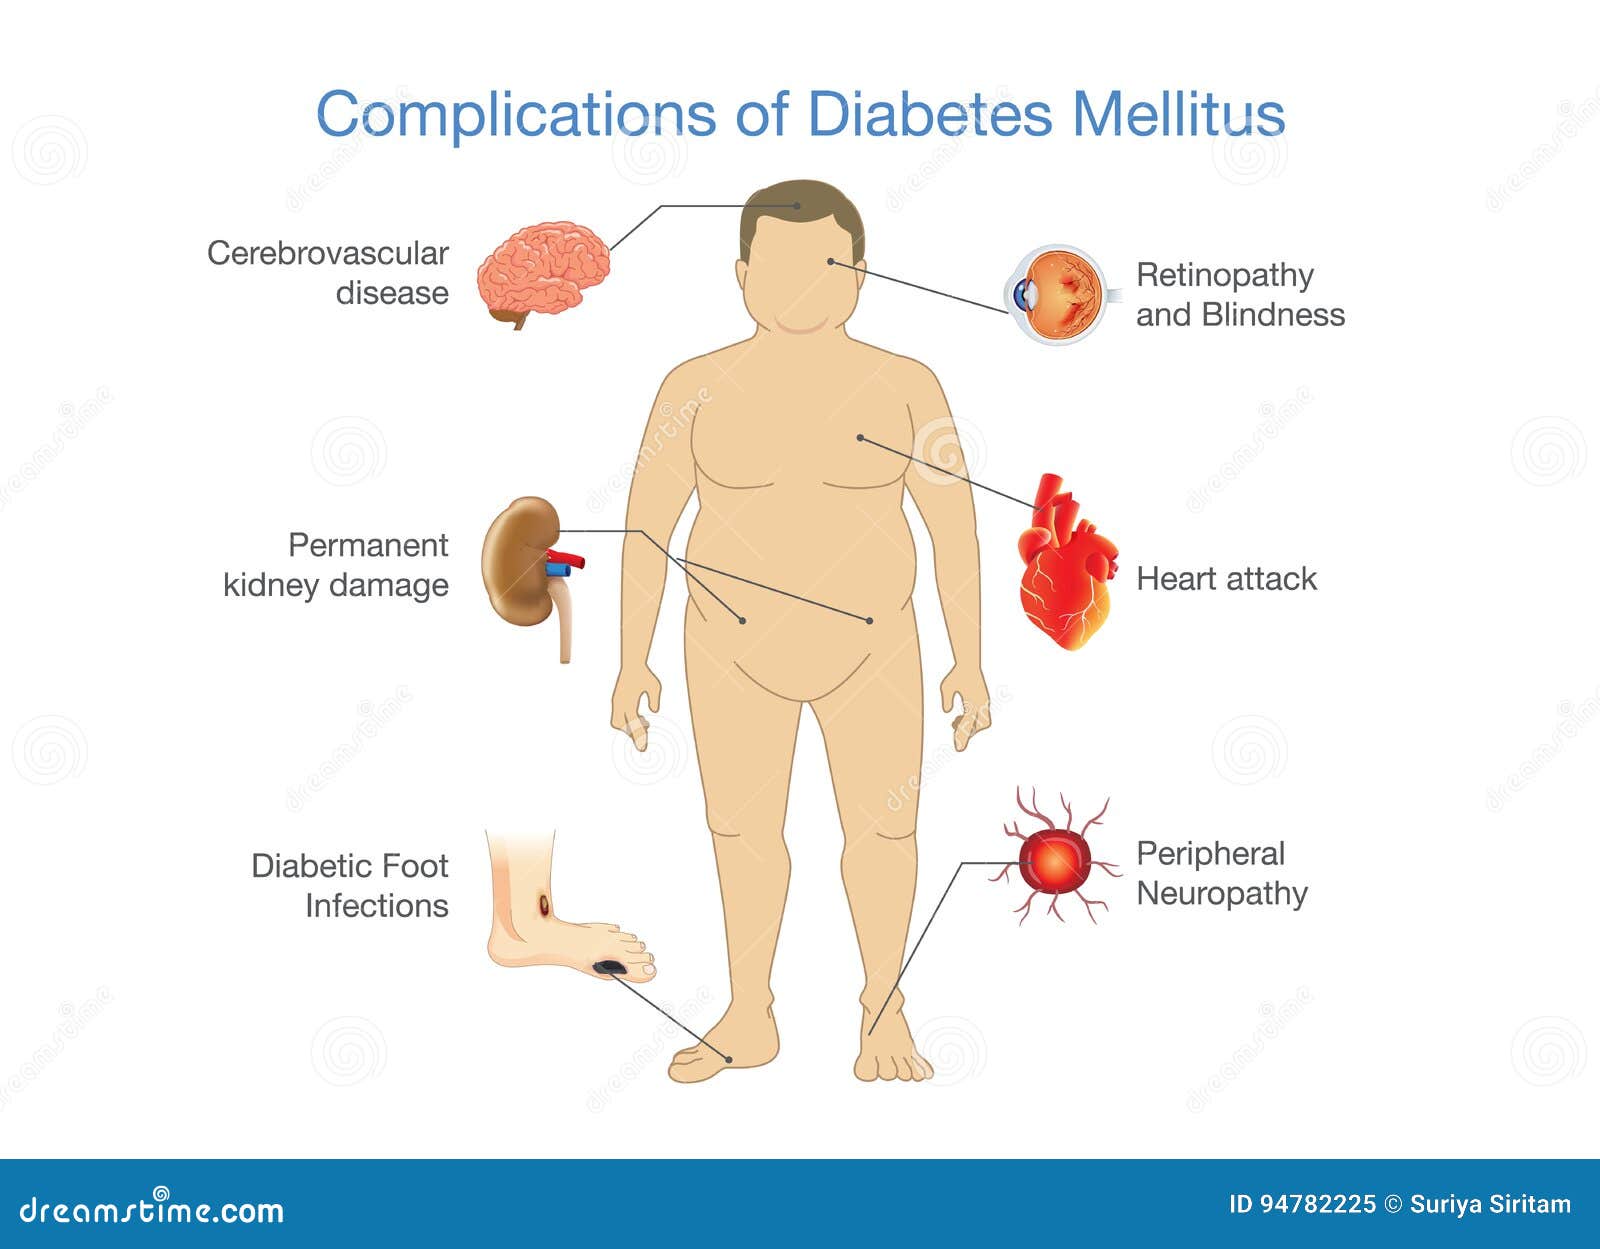 coms diabetes mellitus